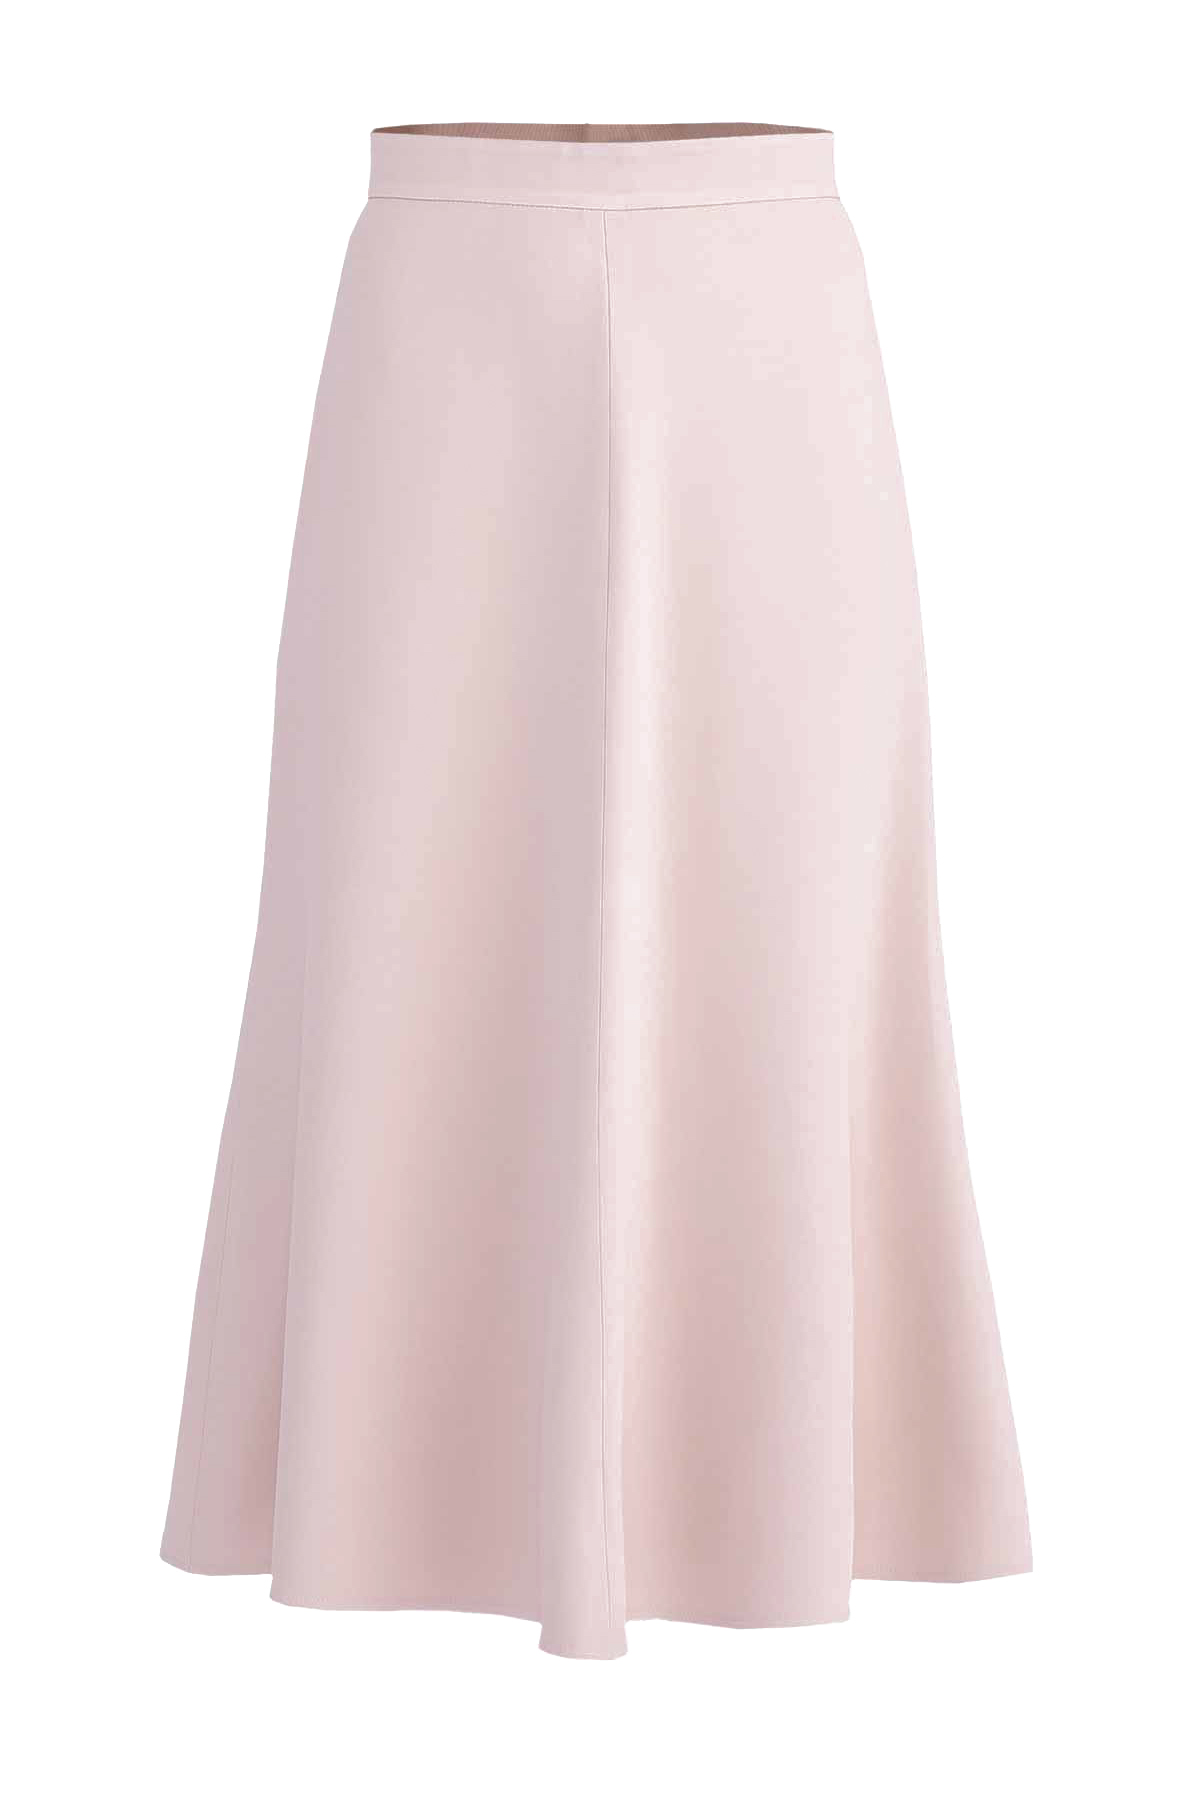 Лаконичная юбка-миди расклешенного кроя ERMANNO SCERVINO, цвет бежевый, размер 46 - фото 1